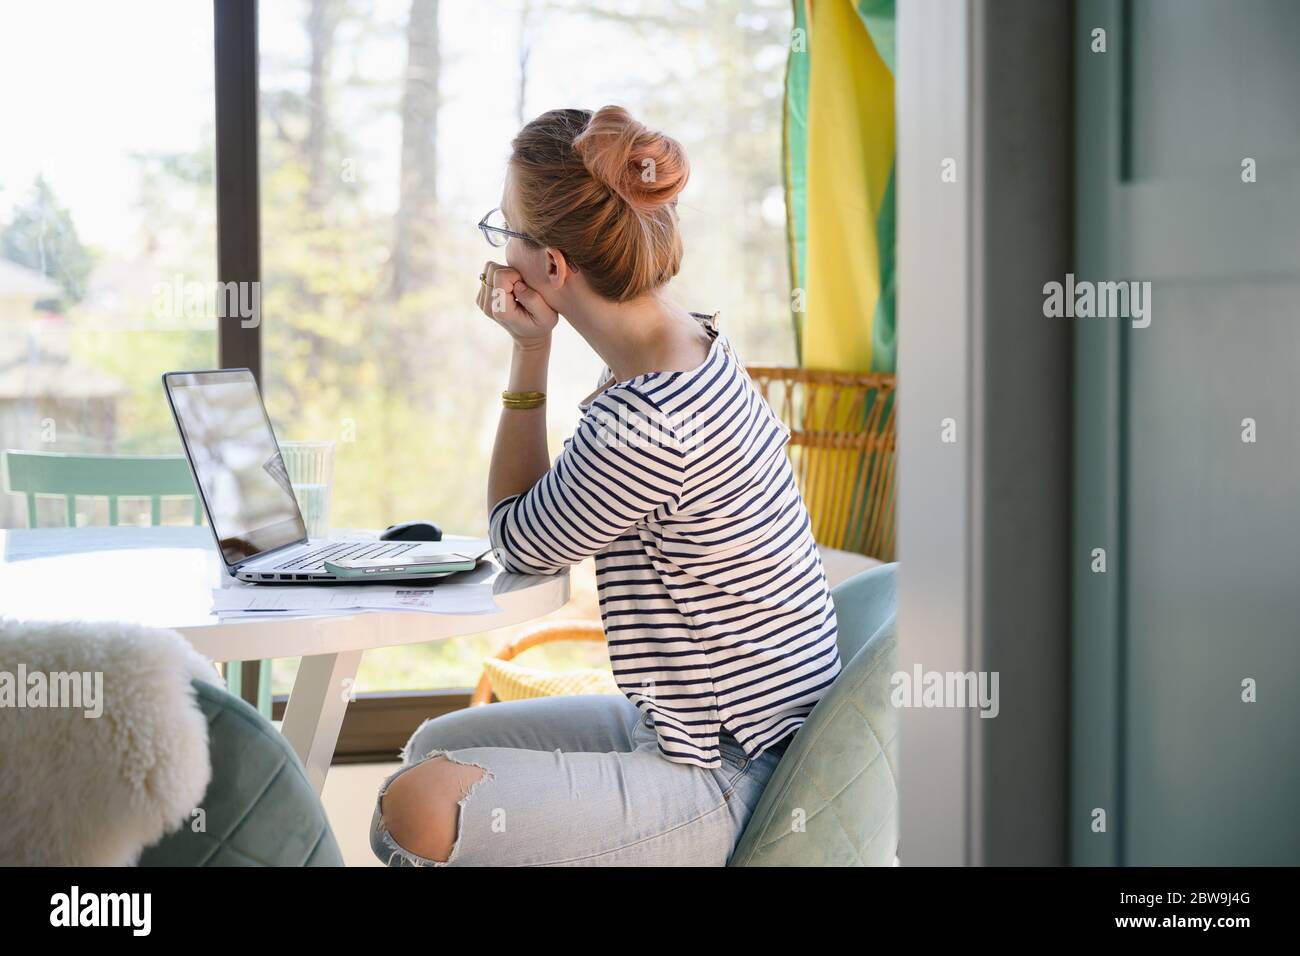 Frau, die vor dem Laptop sitzt und durch das Fenster schaut Stockfoto